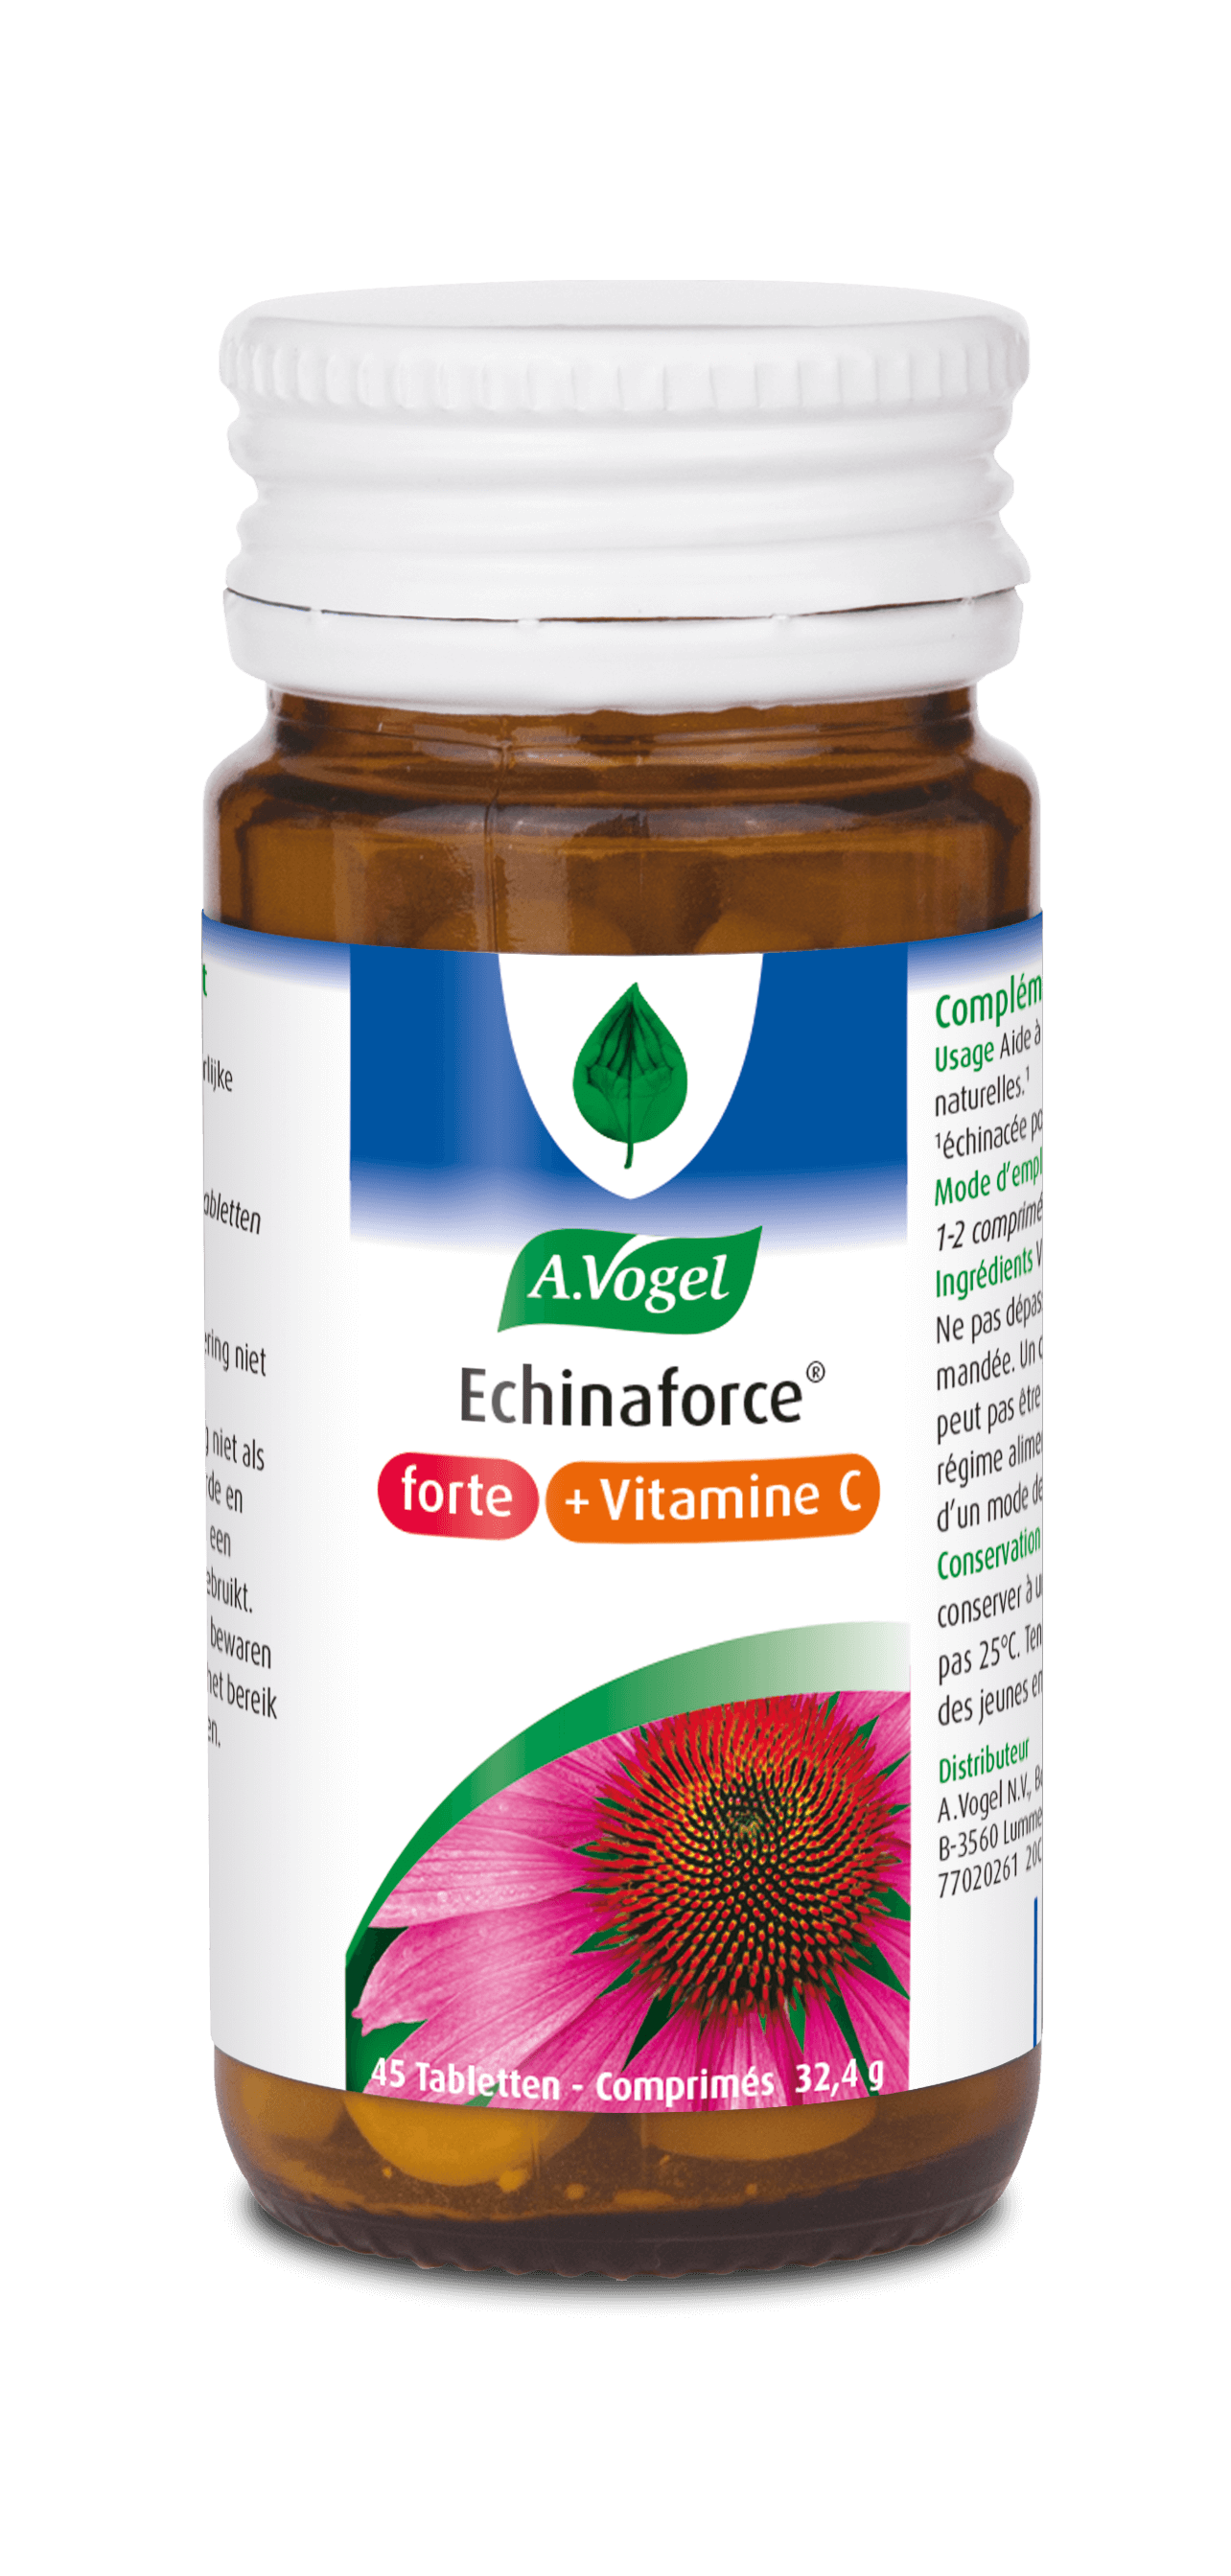 Echinaforce forte + Vitamine C Versterkt de weerstand A.Vogel producten